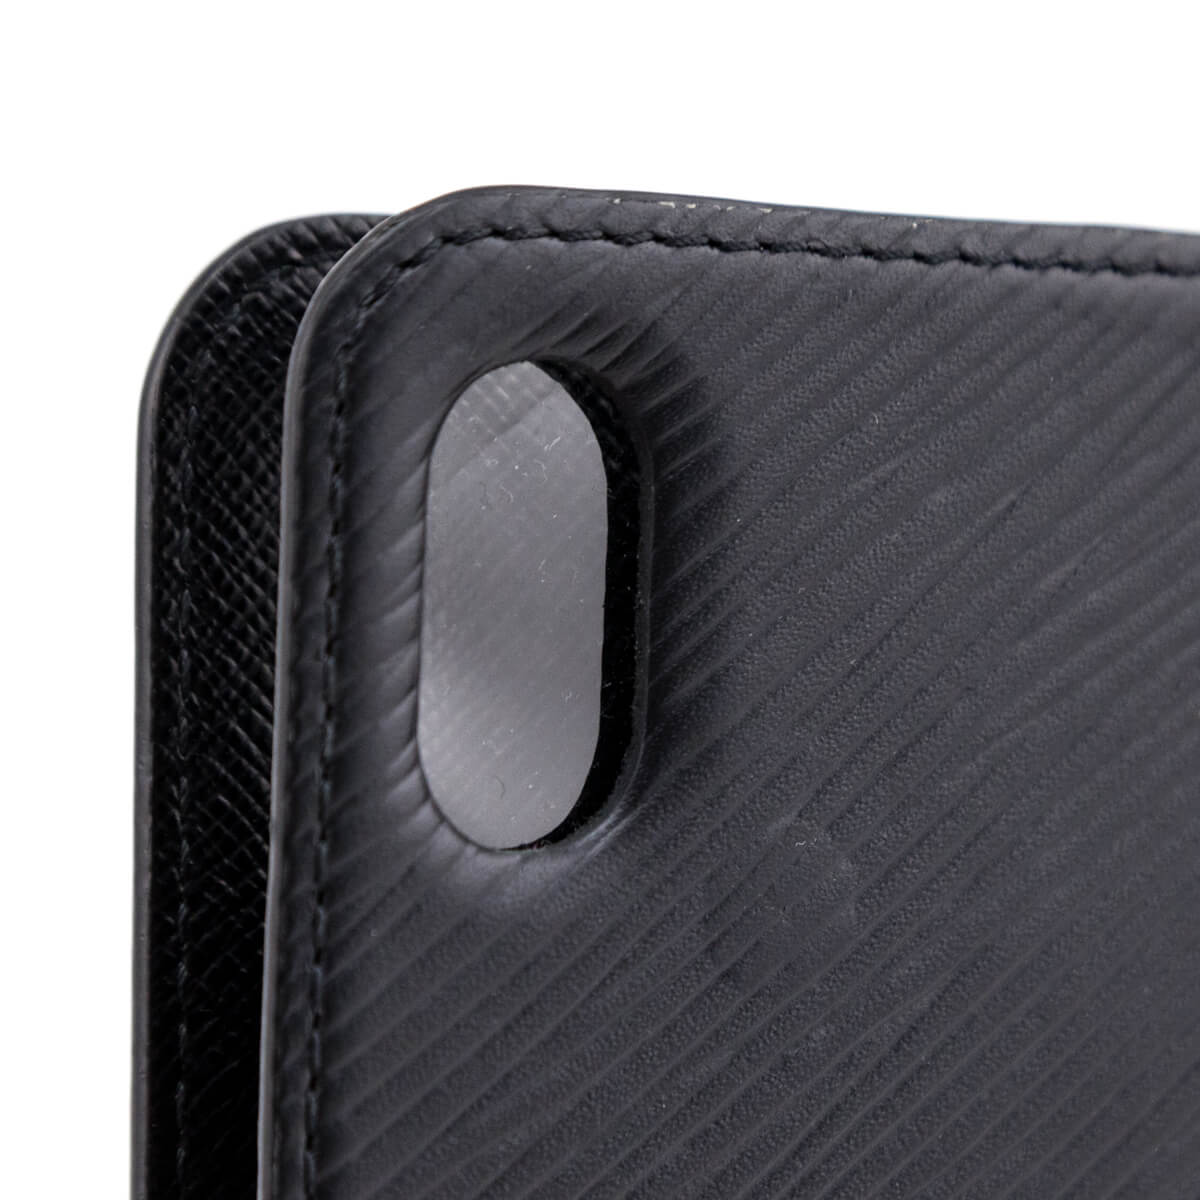 LV iPhone 5C Covers Folio Black Sleeve Coque Fundas Capa Para